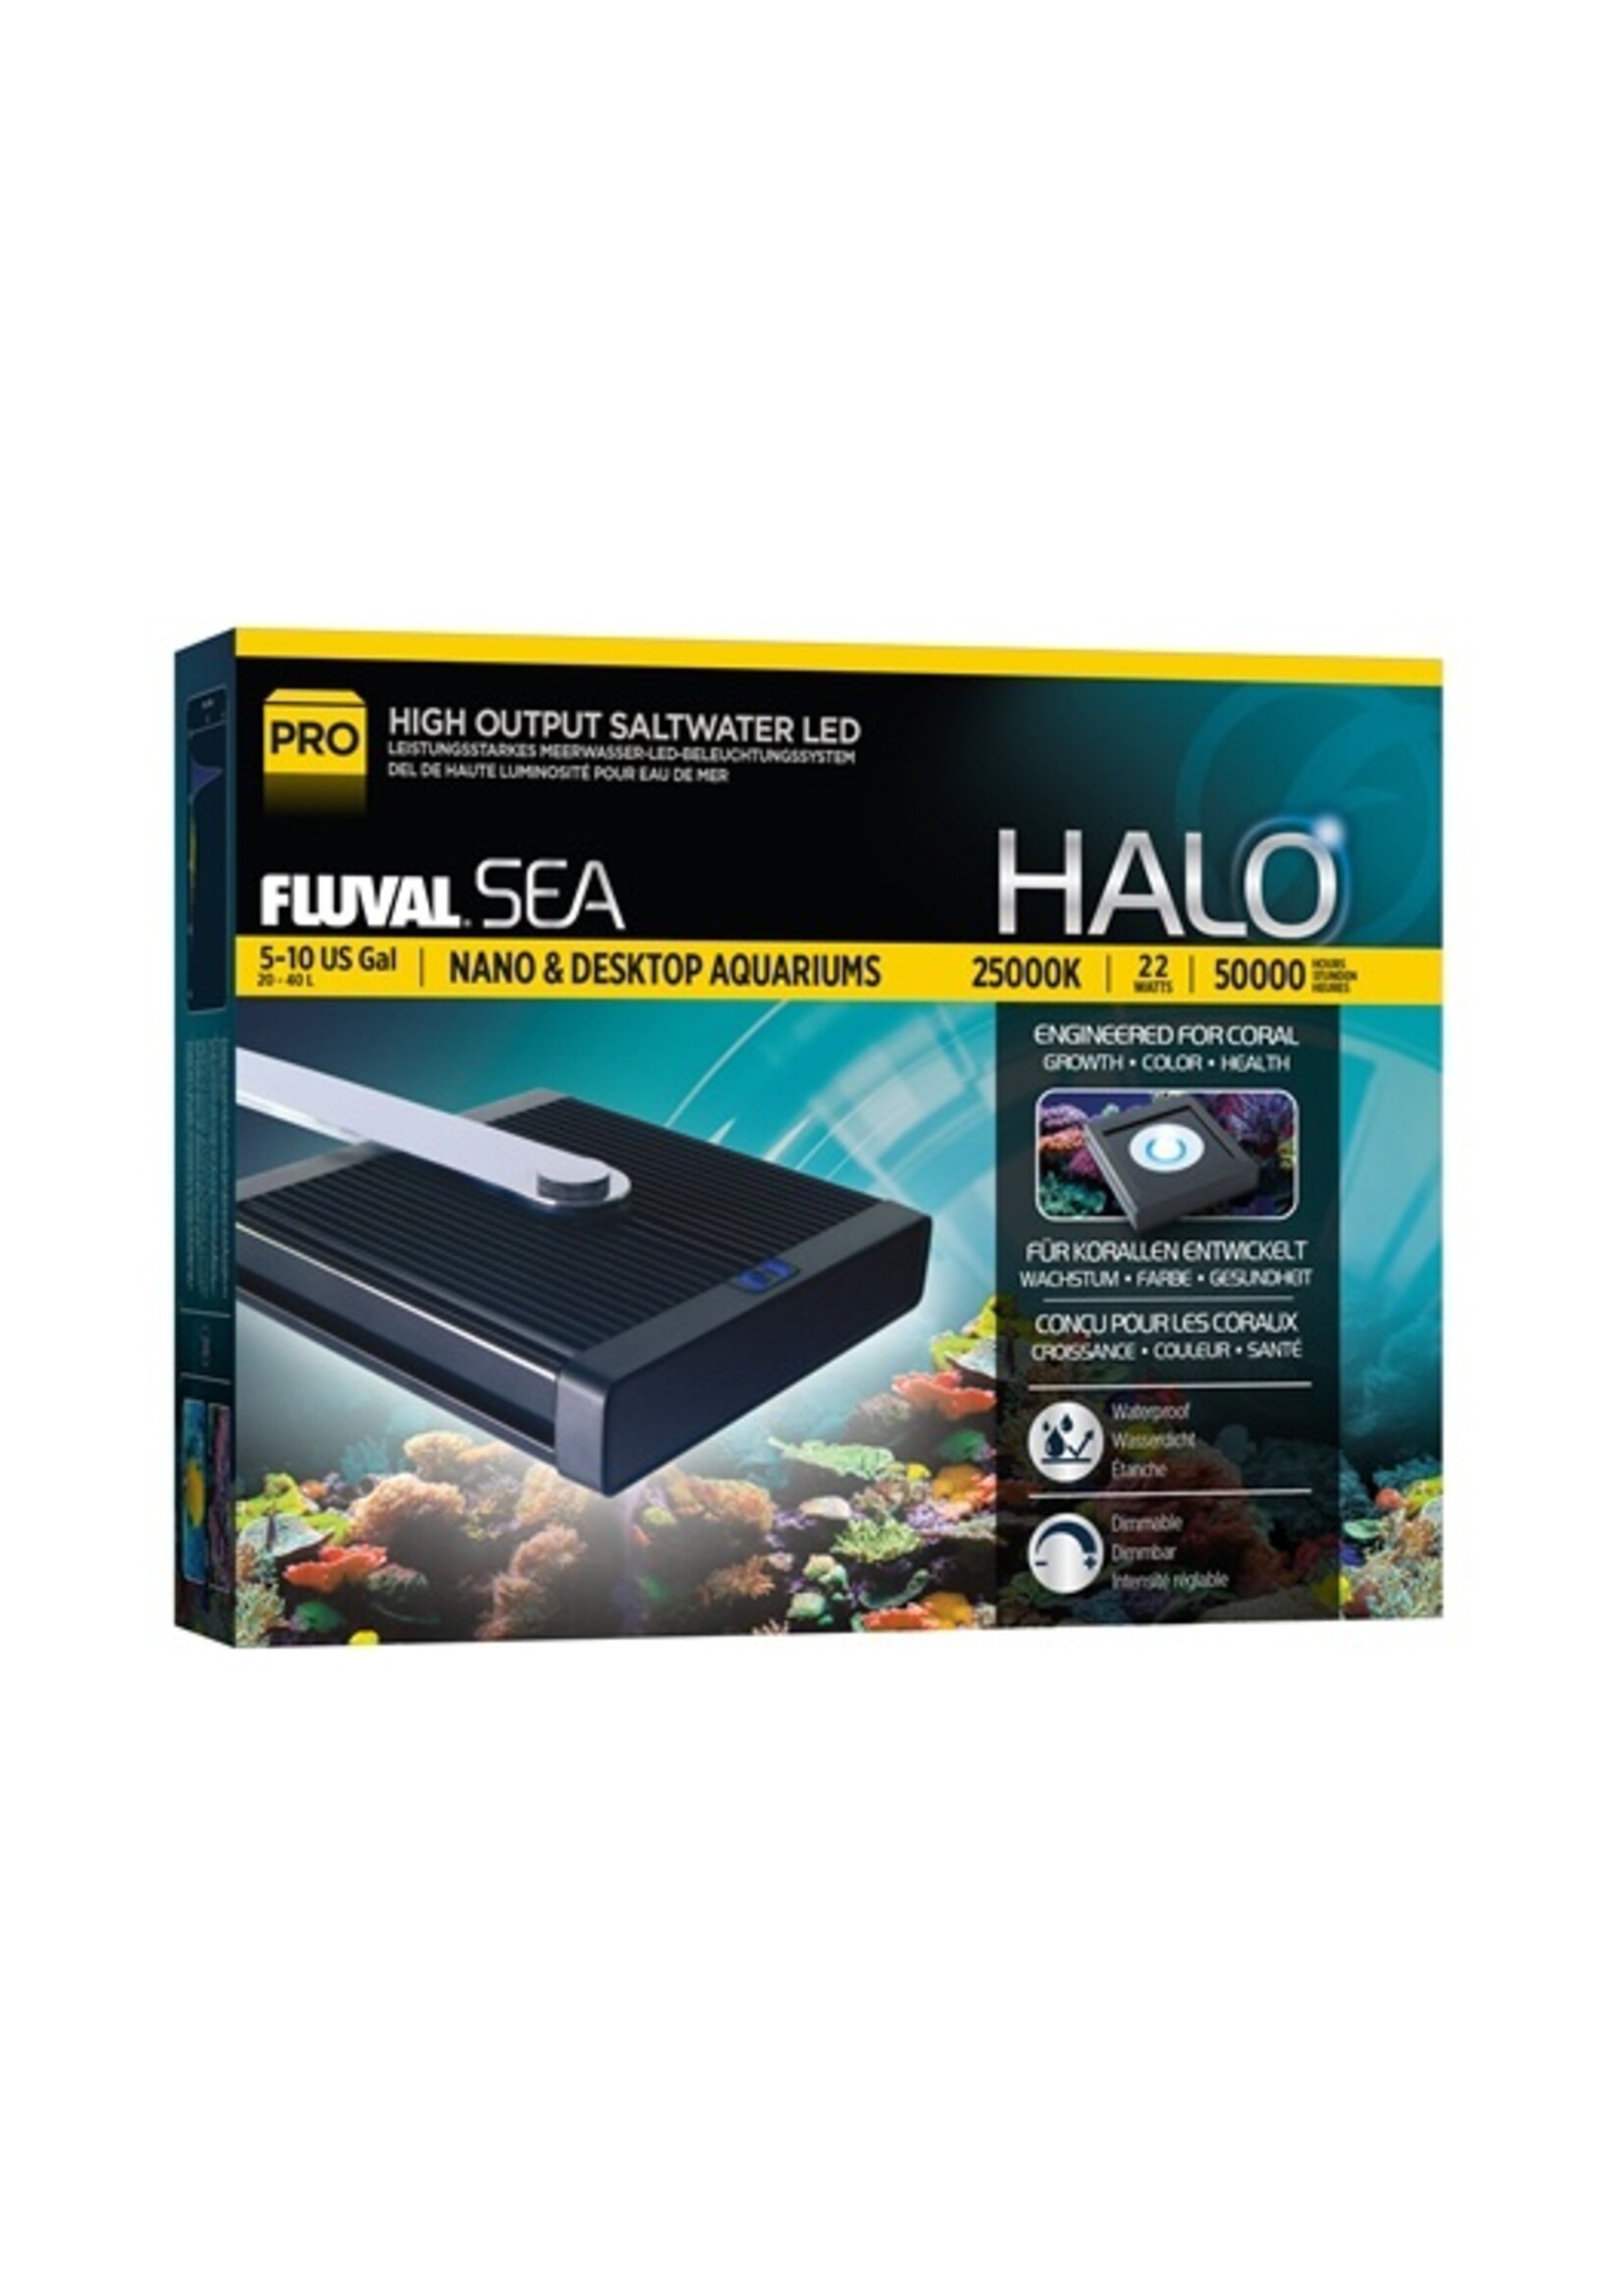 Fluval Sea Fluval Sea Halo 5-10gallons